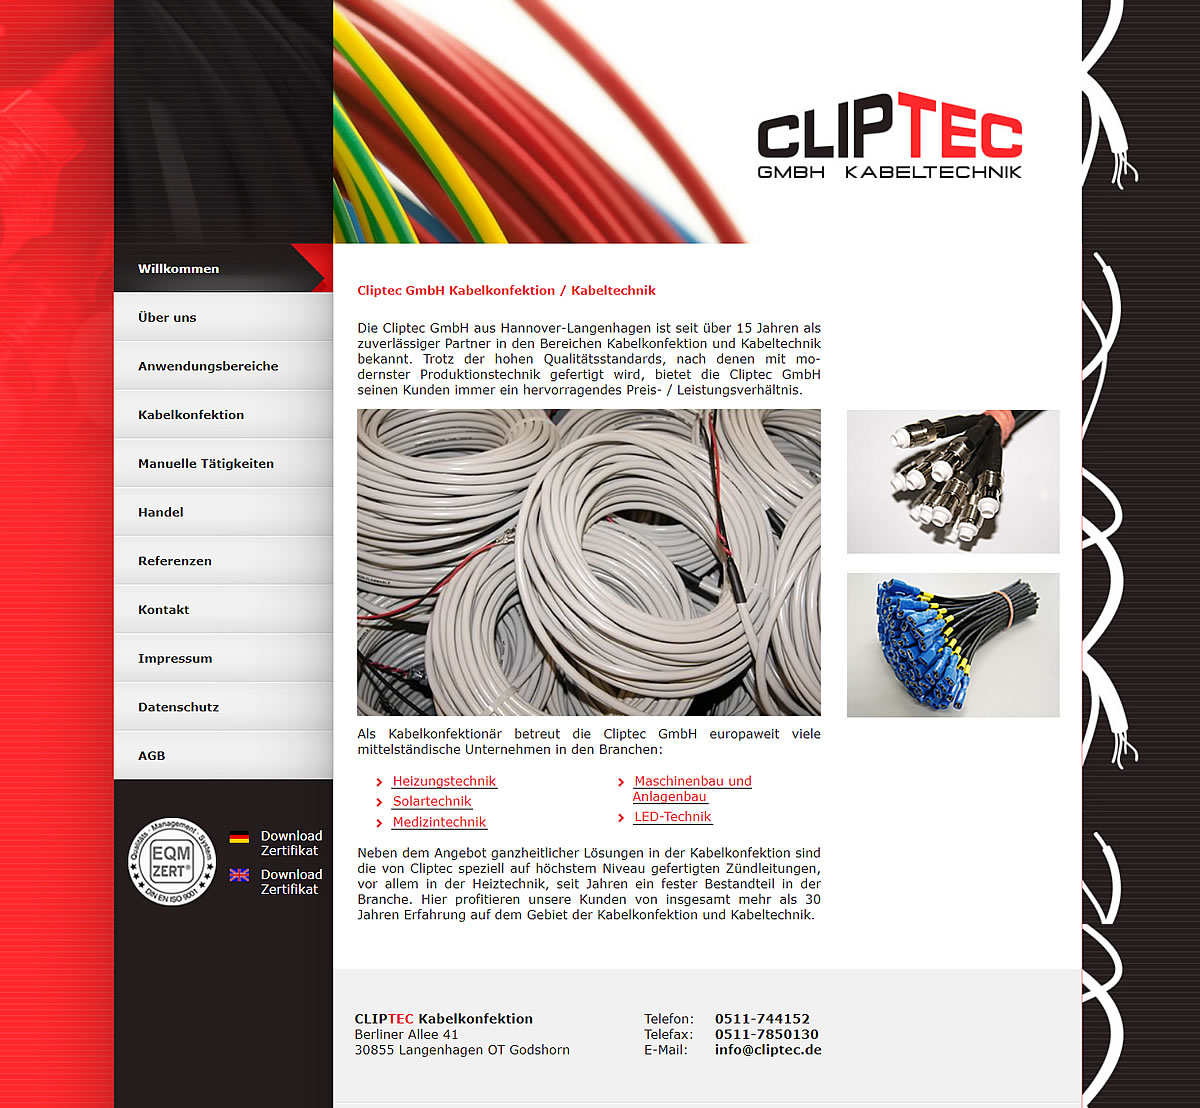 Cliptec GmbH Kabelkonfektion - Als Kabelkonfektion Hersteller wird die Cliptec GmbH Kabelkonfektion allen Anforderungen in Bezug auf das Konfektionieren von Kabeln aller Art gerecht. Wir konfektionieren für Sie Einzellitzen, mehradrige Steuerleitungen, Kabelbäume, Flachbandkabel, Zündkabel, Temperaturfühler PT 1000 - und dies immer bei einem hervorragendem Preis-/Leistungsverhältnis.